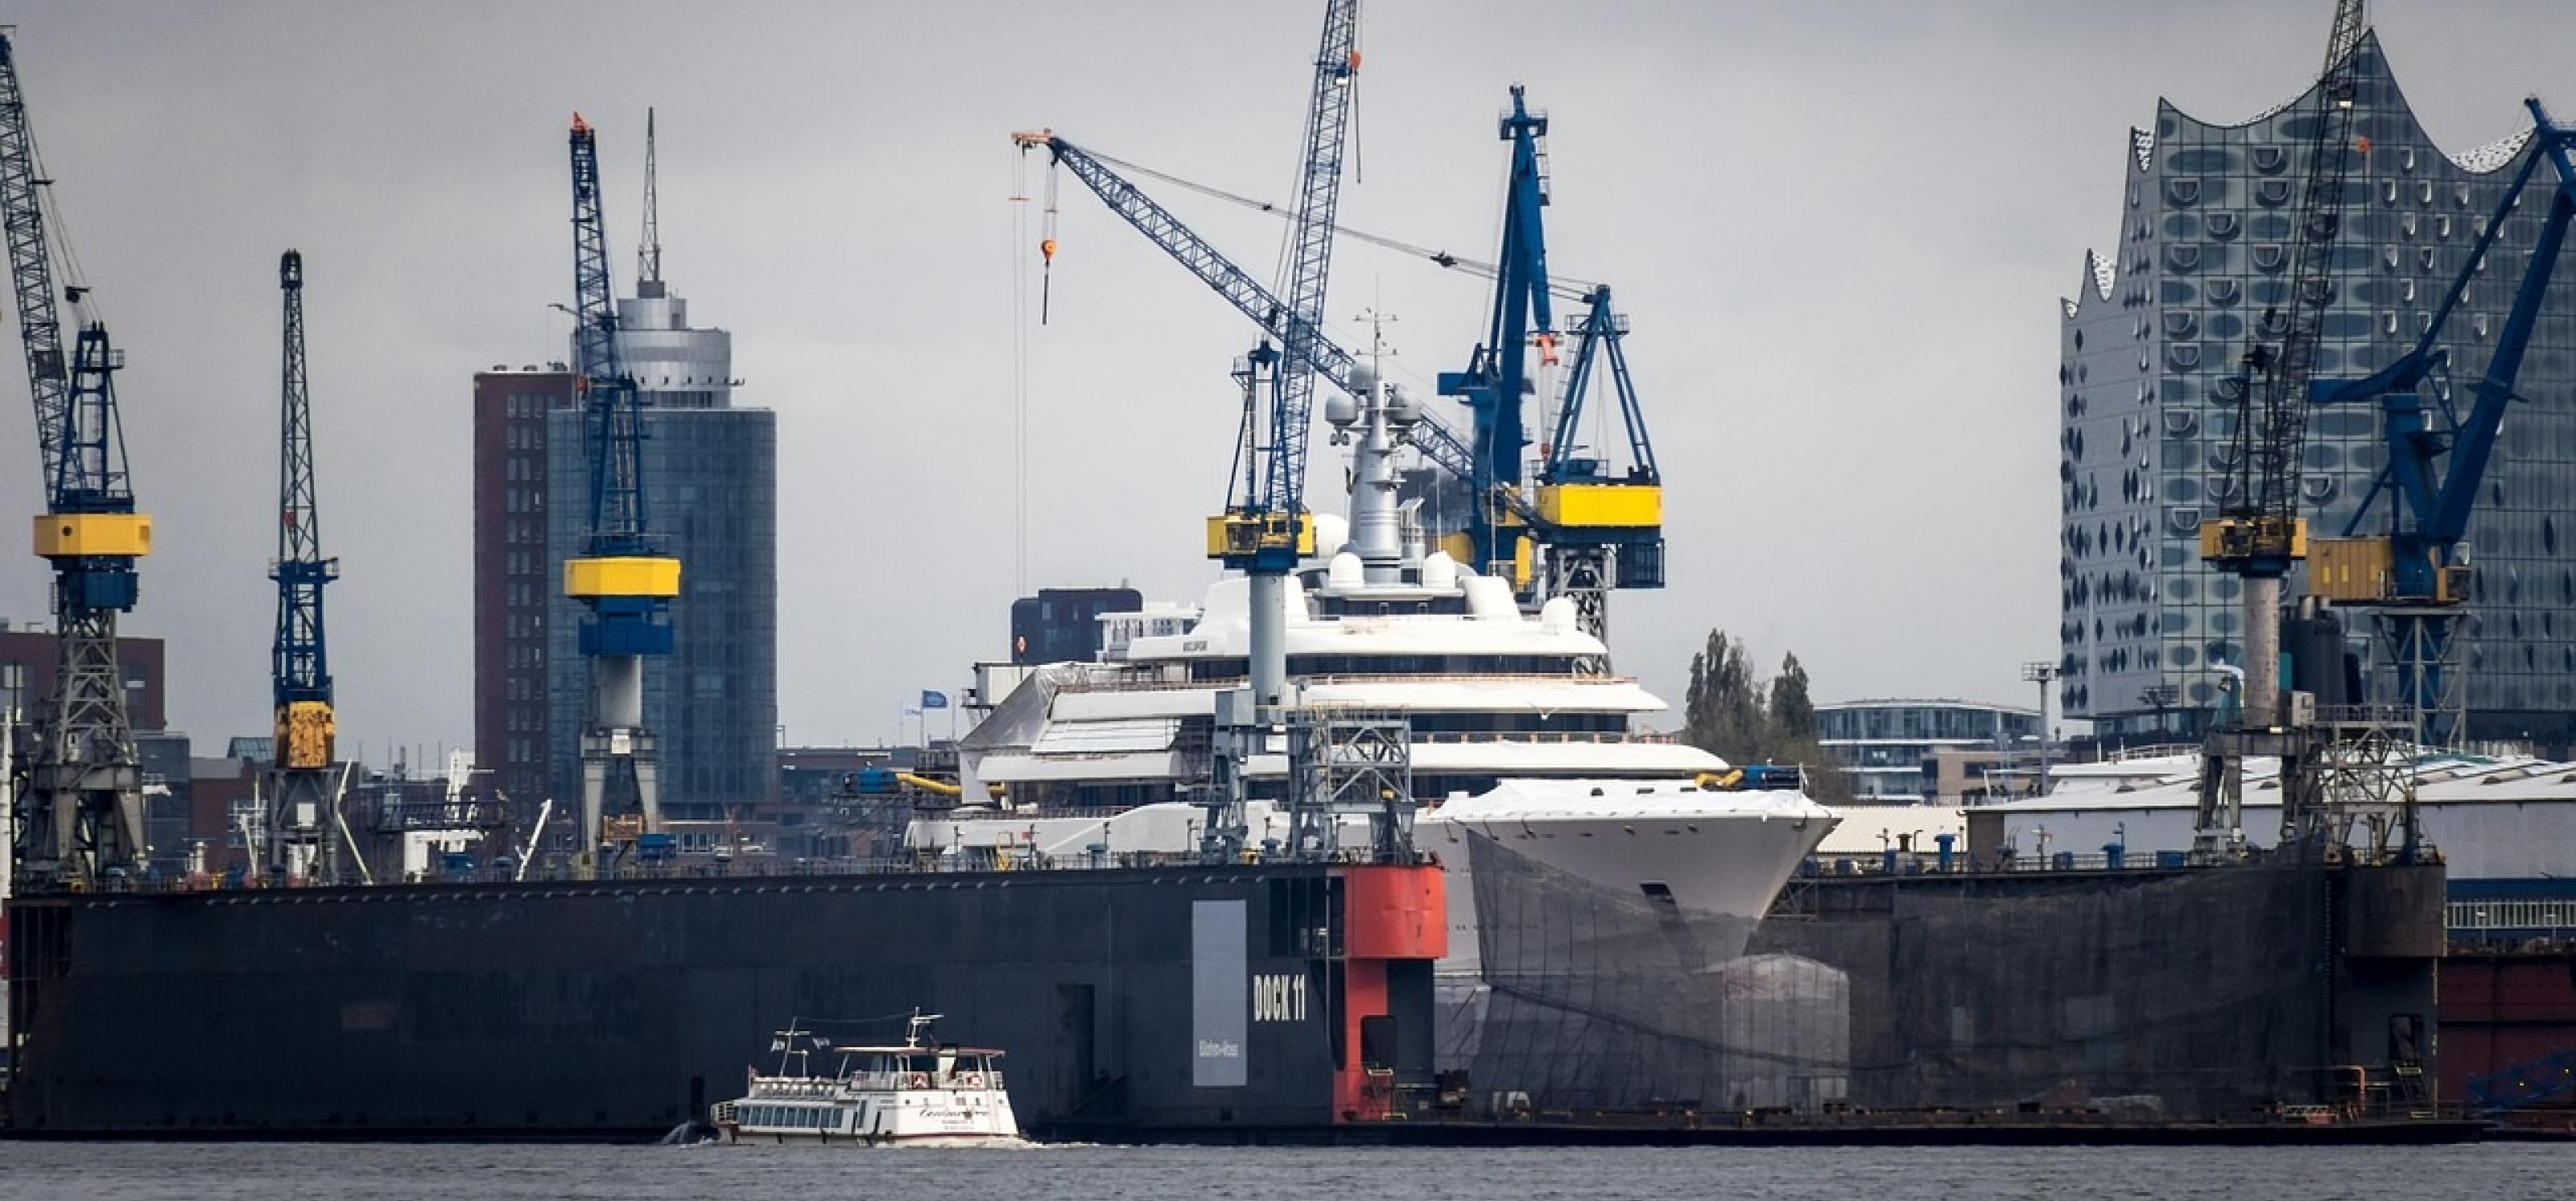 Kräne und Schiffe am Hamburger Hafen, im Hintergrund die Elbphilharmonie